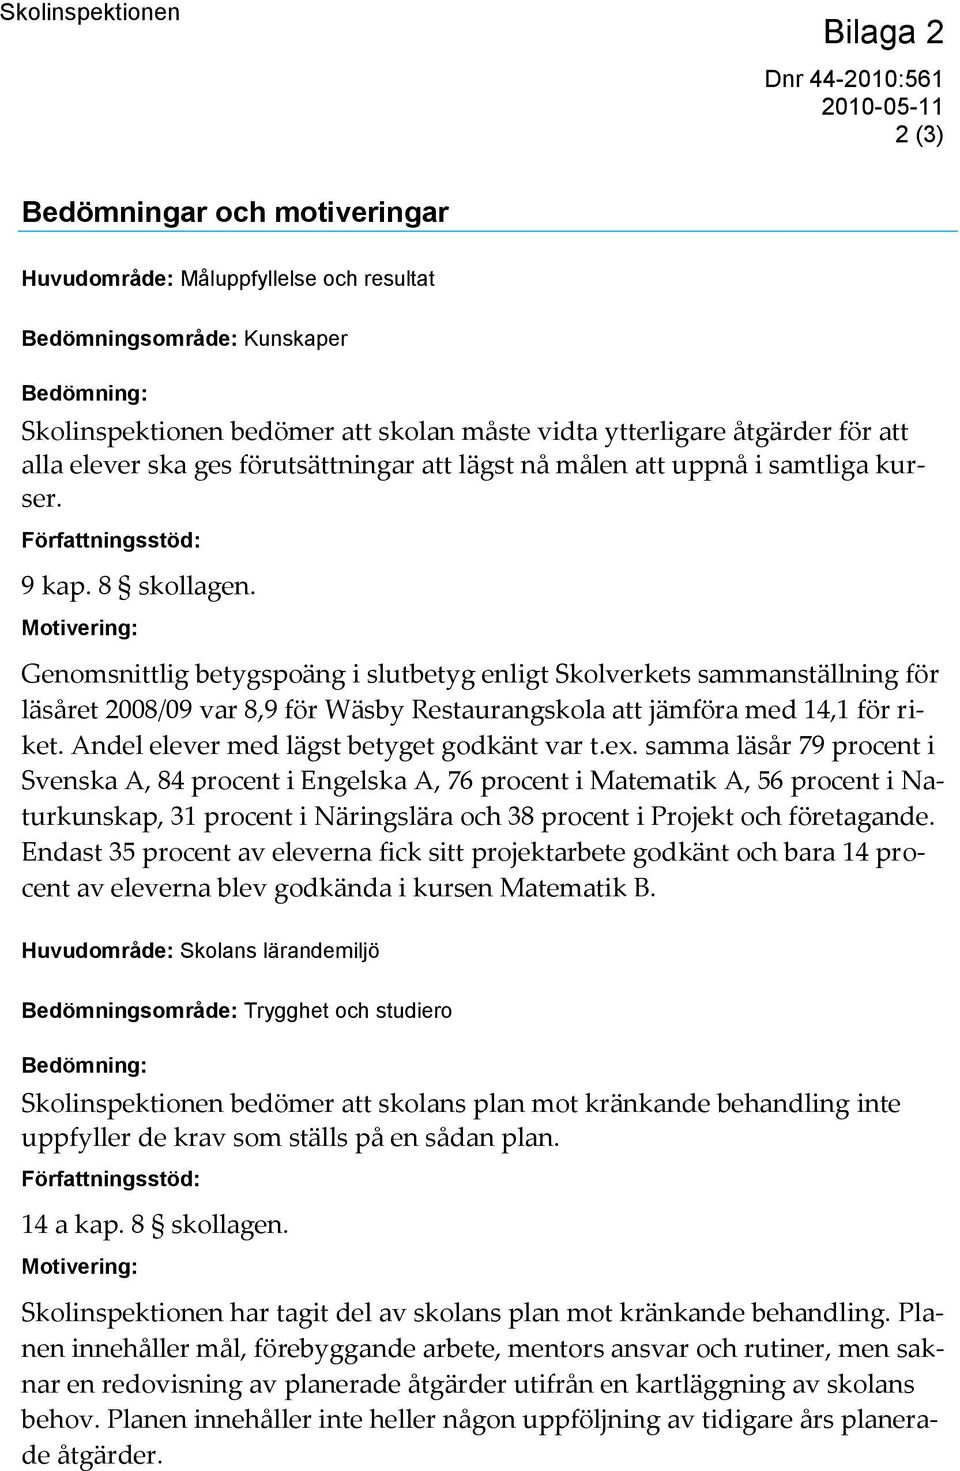 Motivering: Genomsnittlig betygspoäng i slutbetyg enligt Skolverkets sammanställning för läsåret 2008/09 var 8,9 för Wäsby Restaurangskola att jämföra med 14,1 för riket.